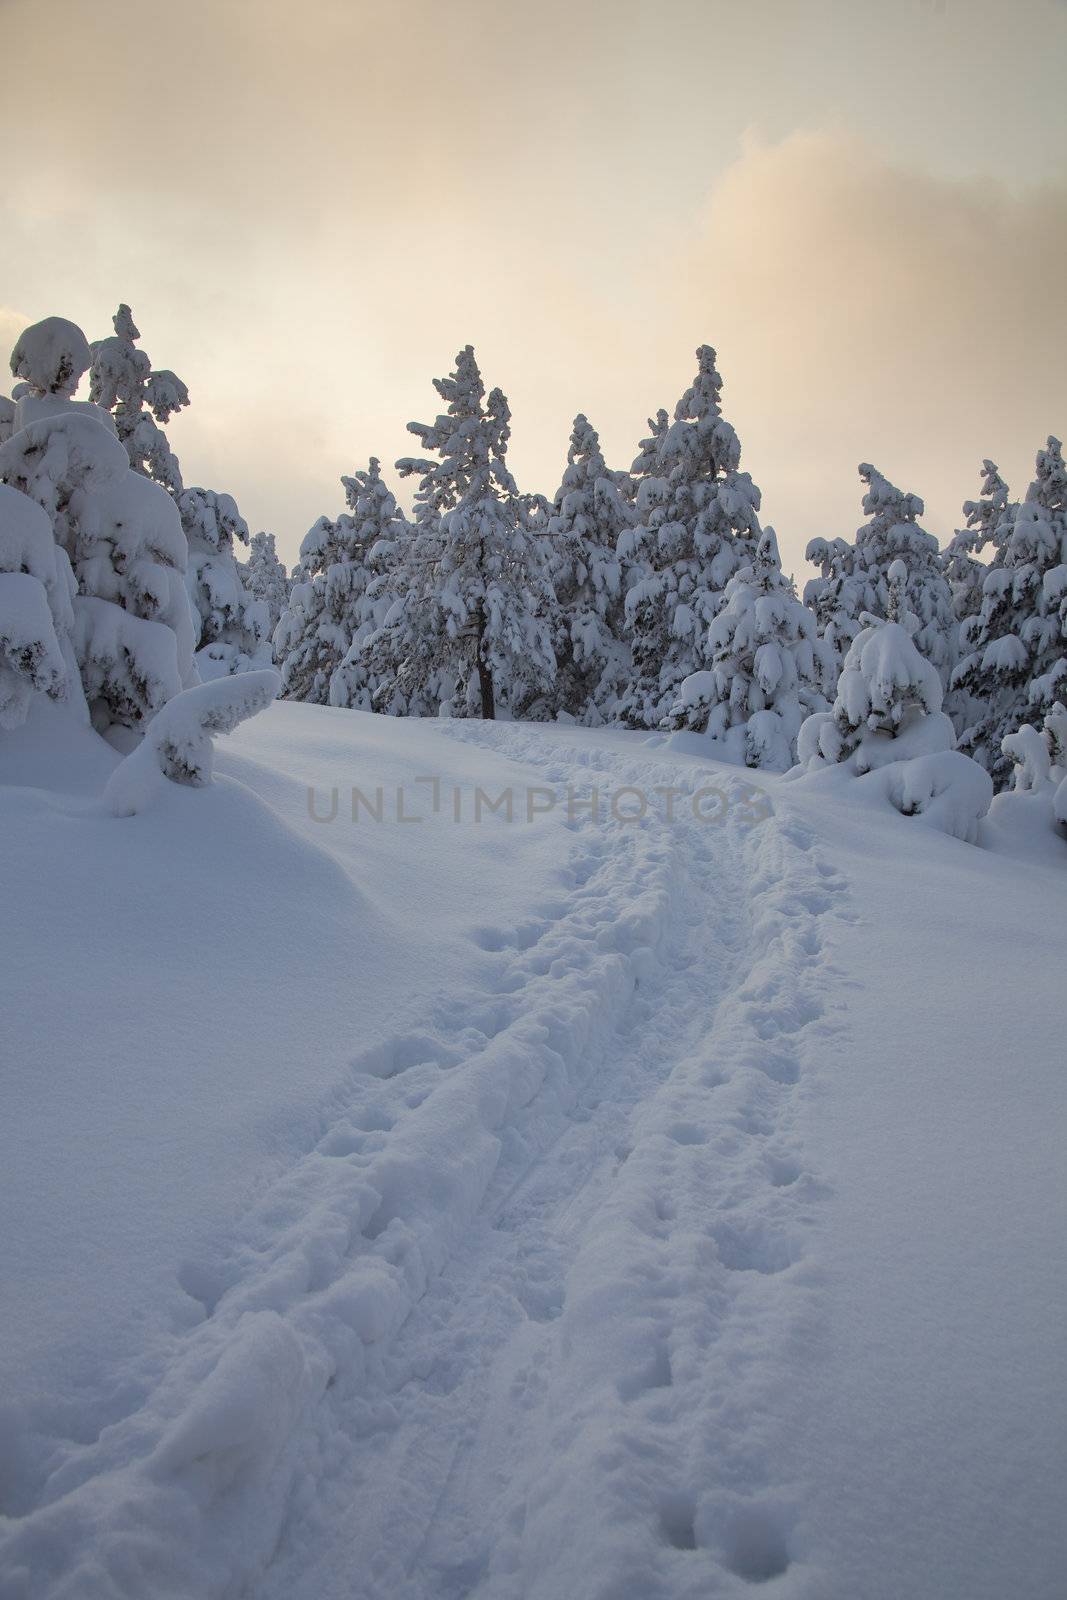 Footprints in snow by adamr